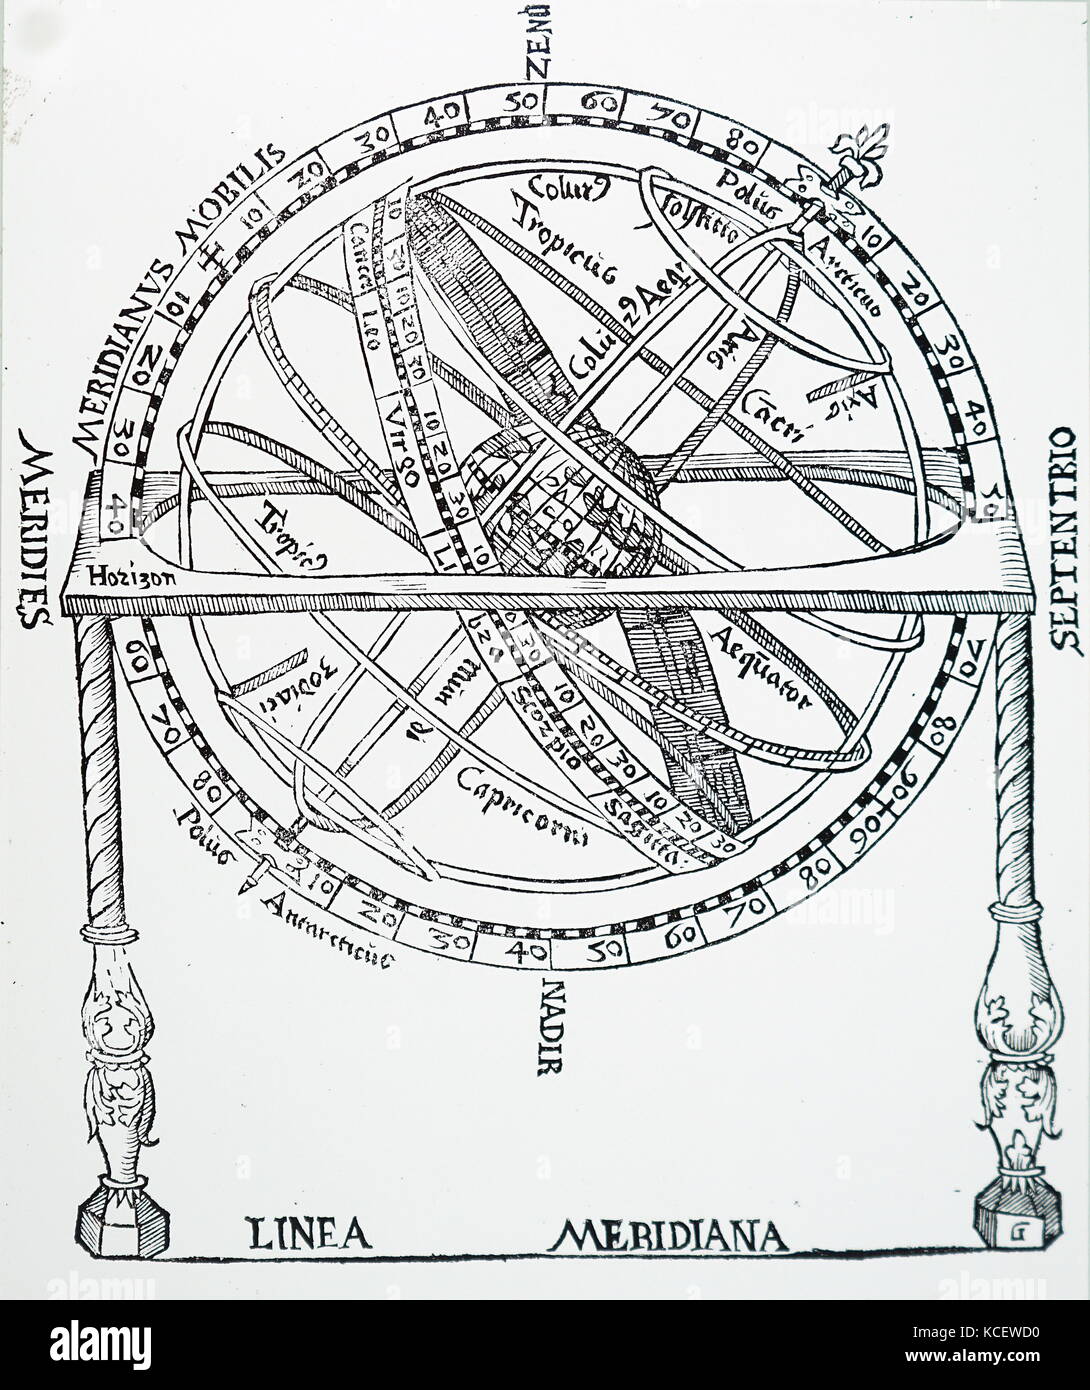 Abbildung: Darstellung einer Armillarsphäre. Eine Armillarsphäre ist ein Modell der Objekte im Himmel, bestehend aus einem kugelförmigen Rahmen der Ringe, auf der Erde oder Sonne zentriert, dass Linien der himmlischen Längen- und Breitengrad sowie andere astronomisch wichtige Funktionen wie die Ekliptik dar. Vom 16. Jahrhundert Stockfoto